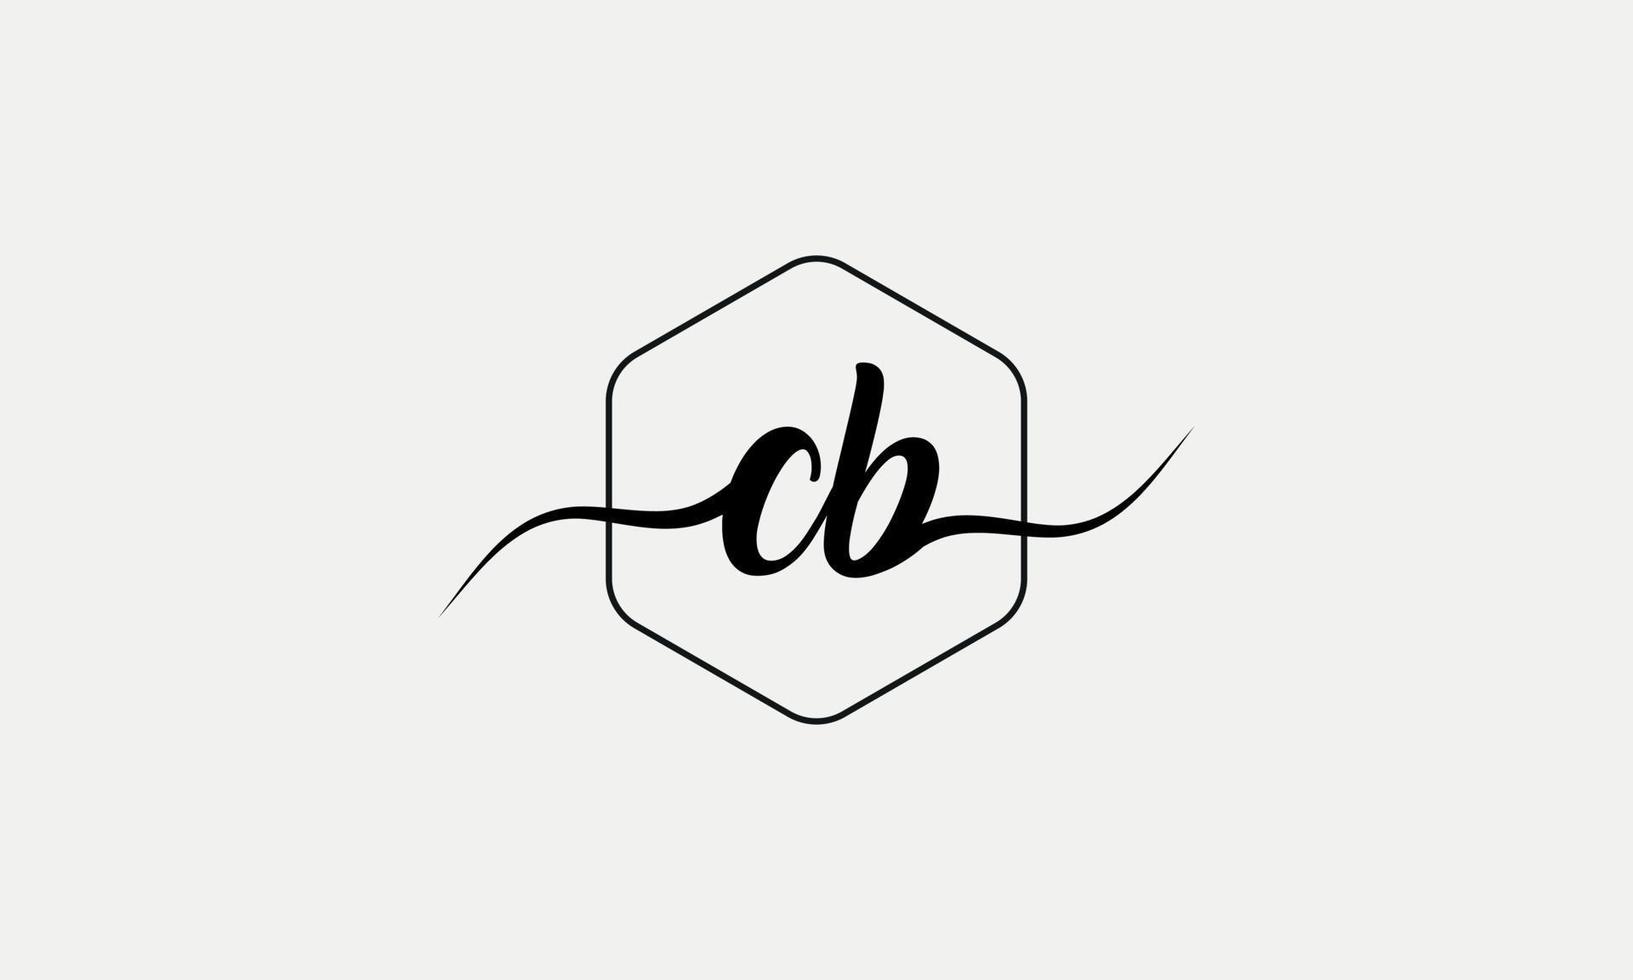 écriture manuscrite lettre cb logo pro fichier vectoriel